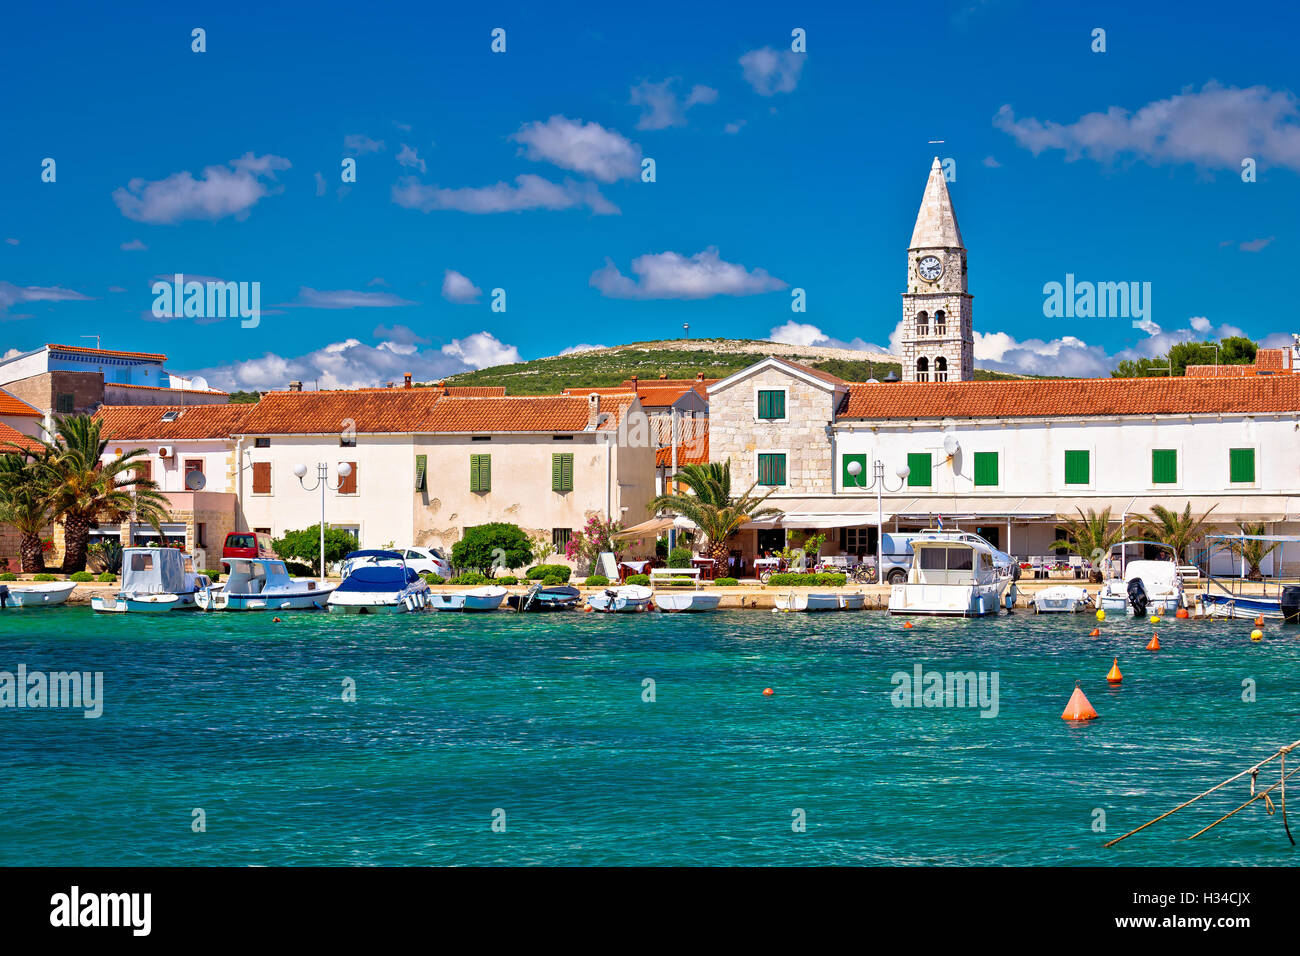 Village de potos vue front de mer, la Dalmatie, Croatie Banque D'Images